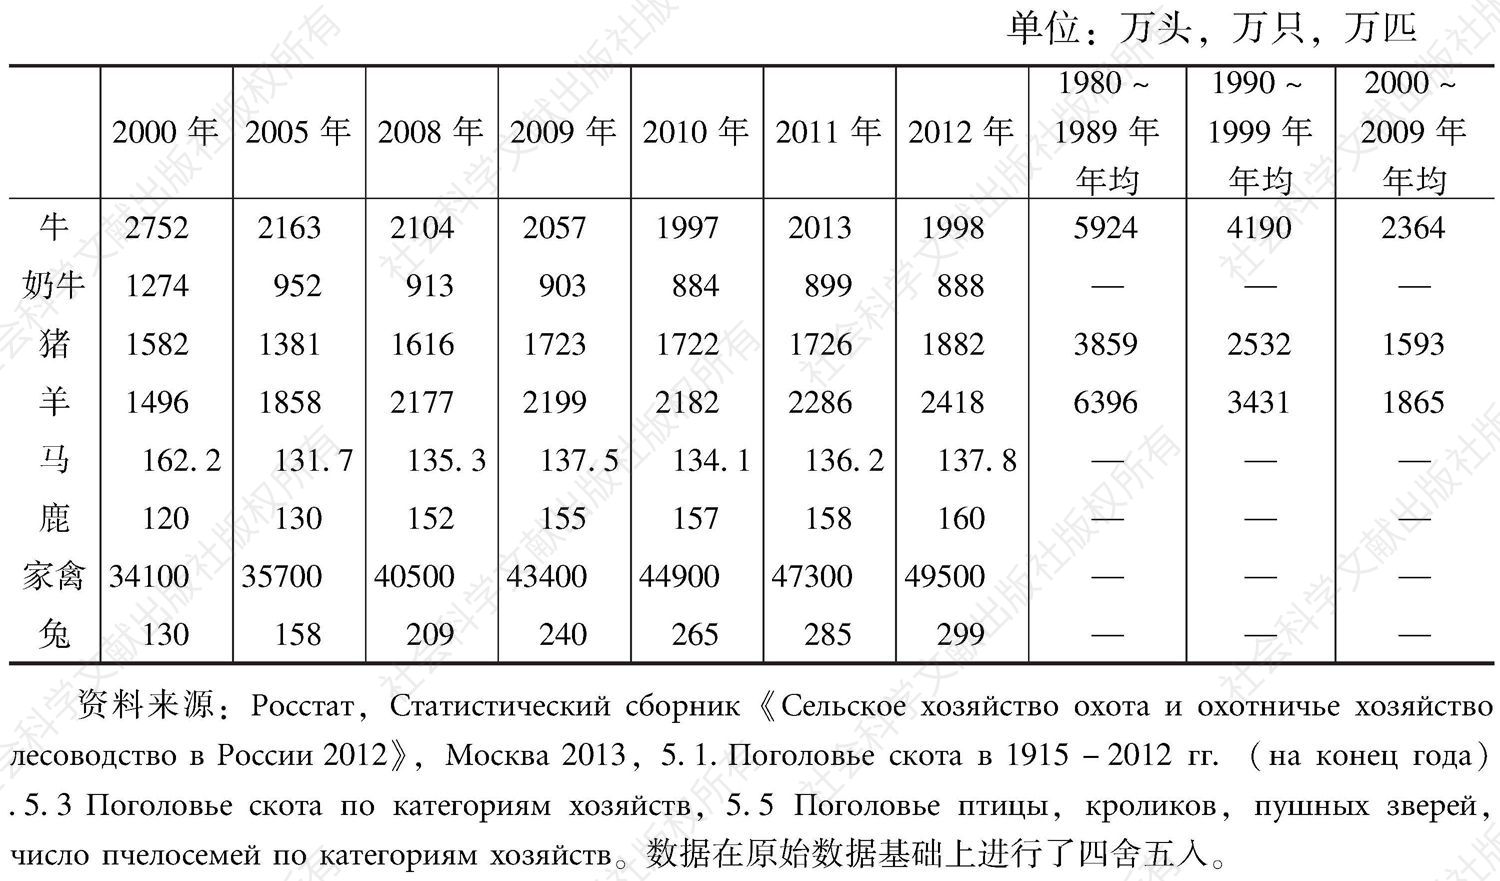 表2-20 俄罗斯牲畜存栏量统计（当年年底）